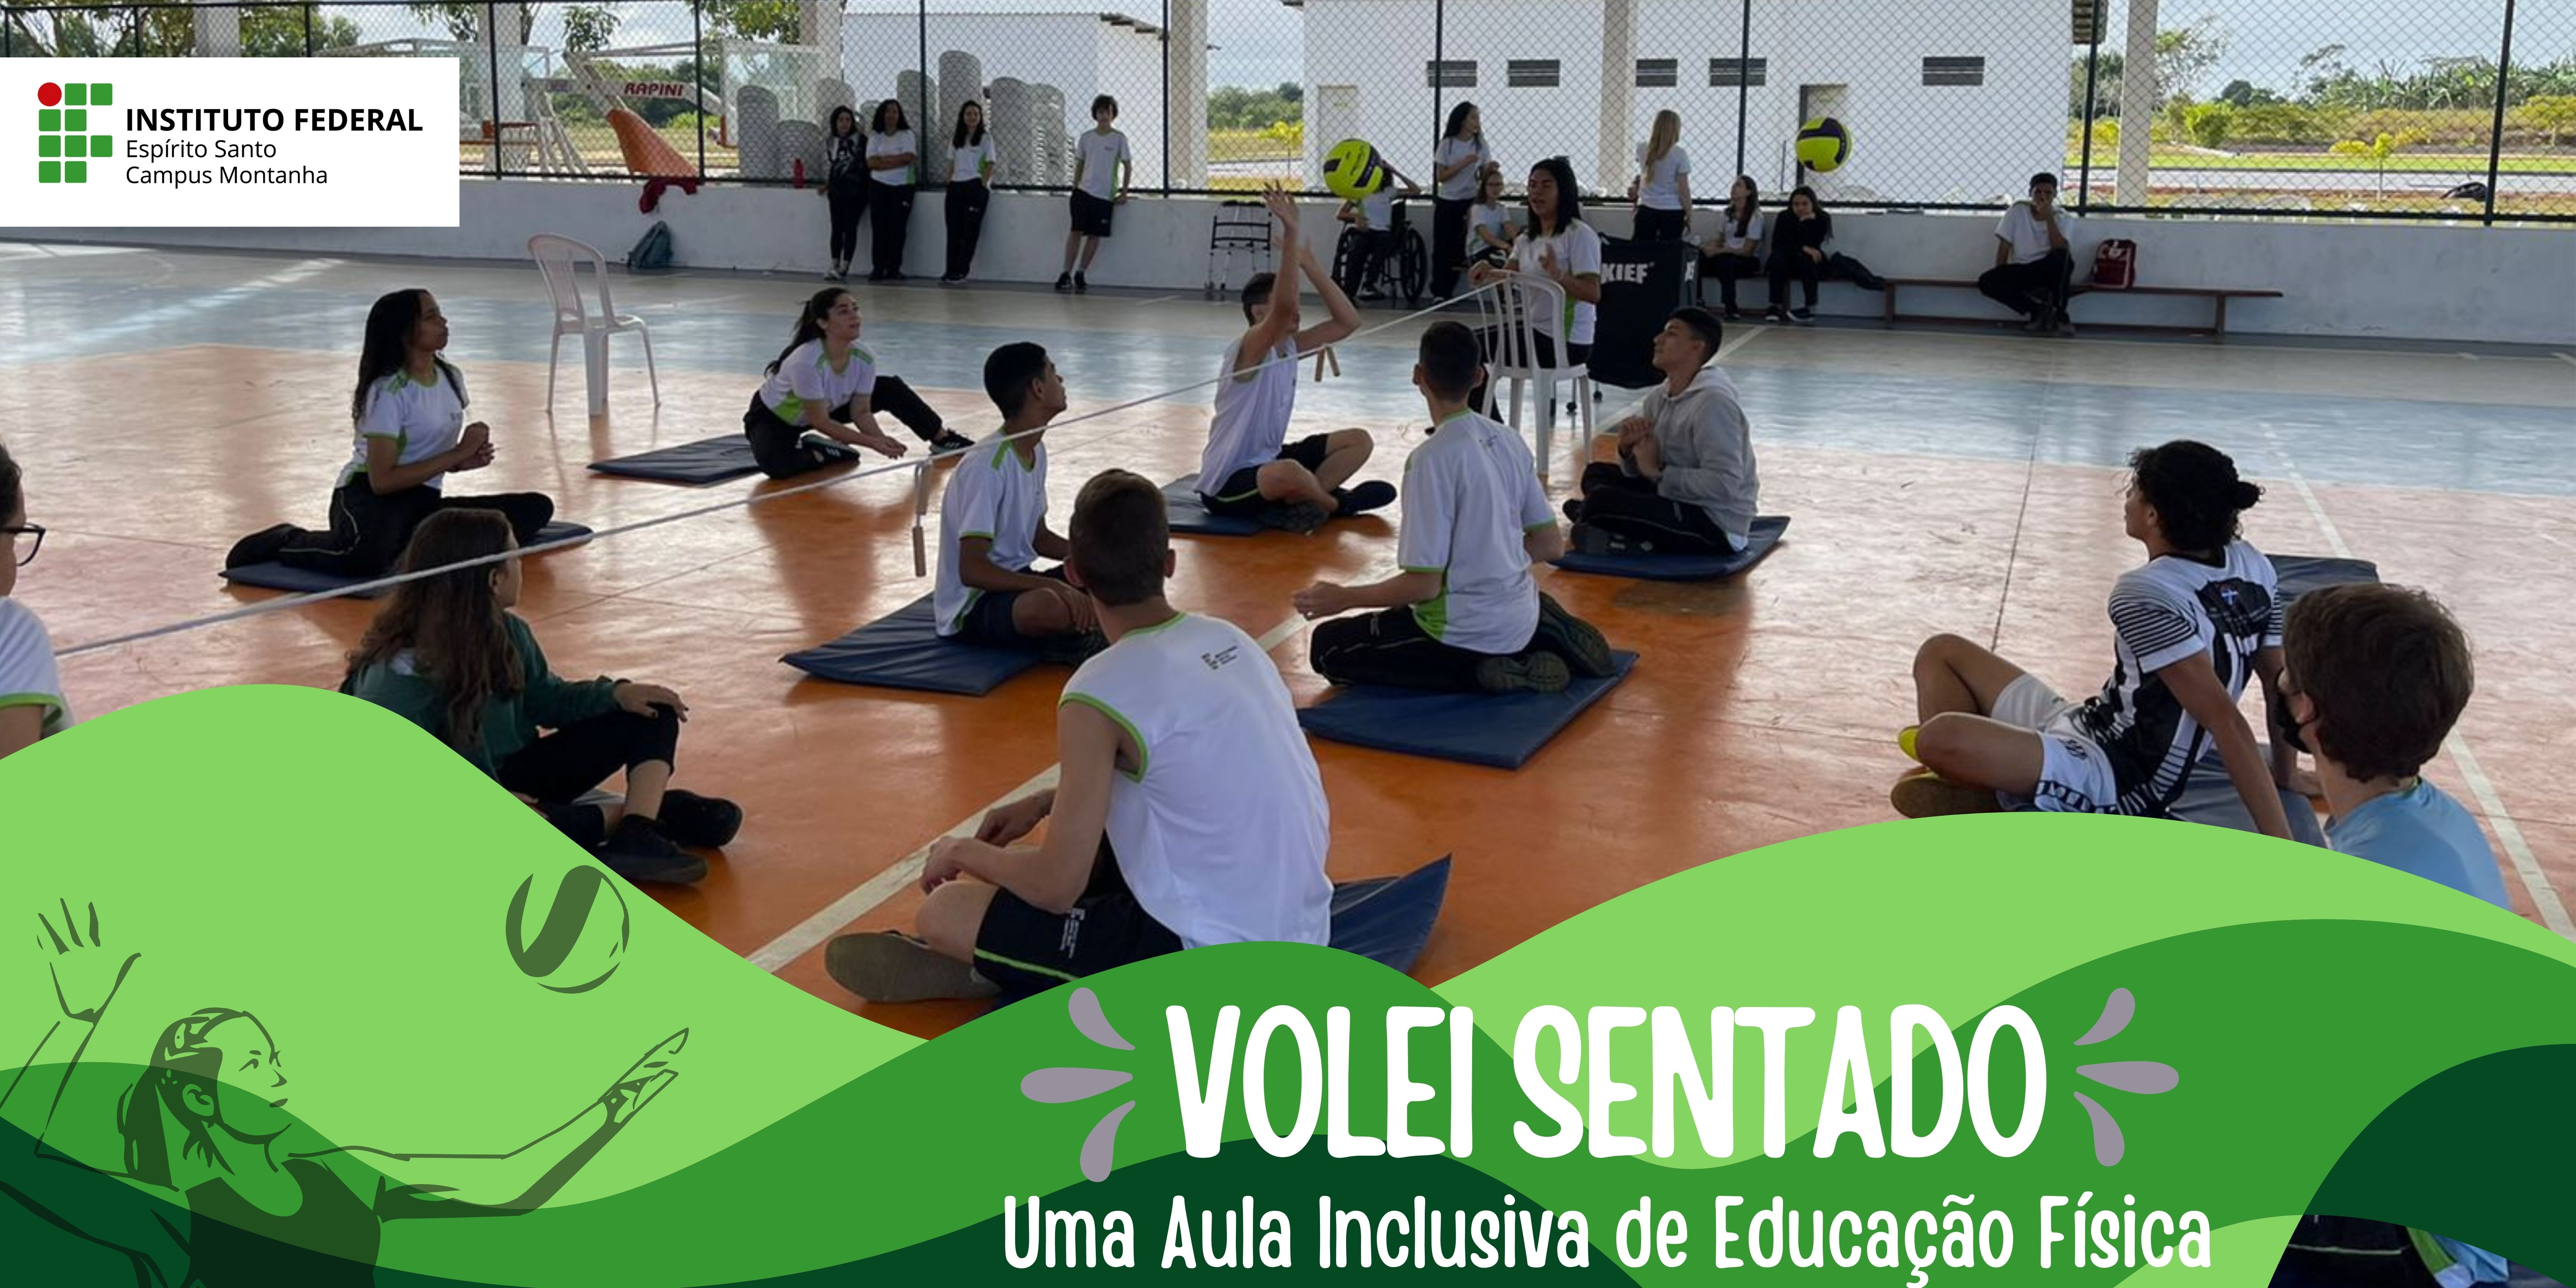 Ifes Campus Montanha realiza atividades esportivas para inclusão